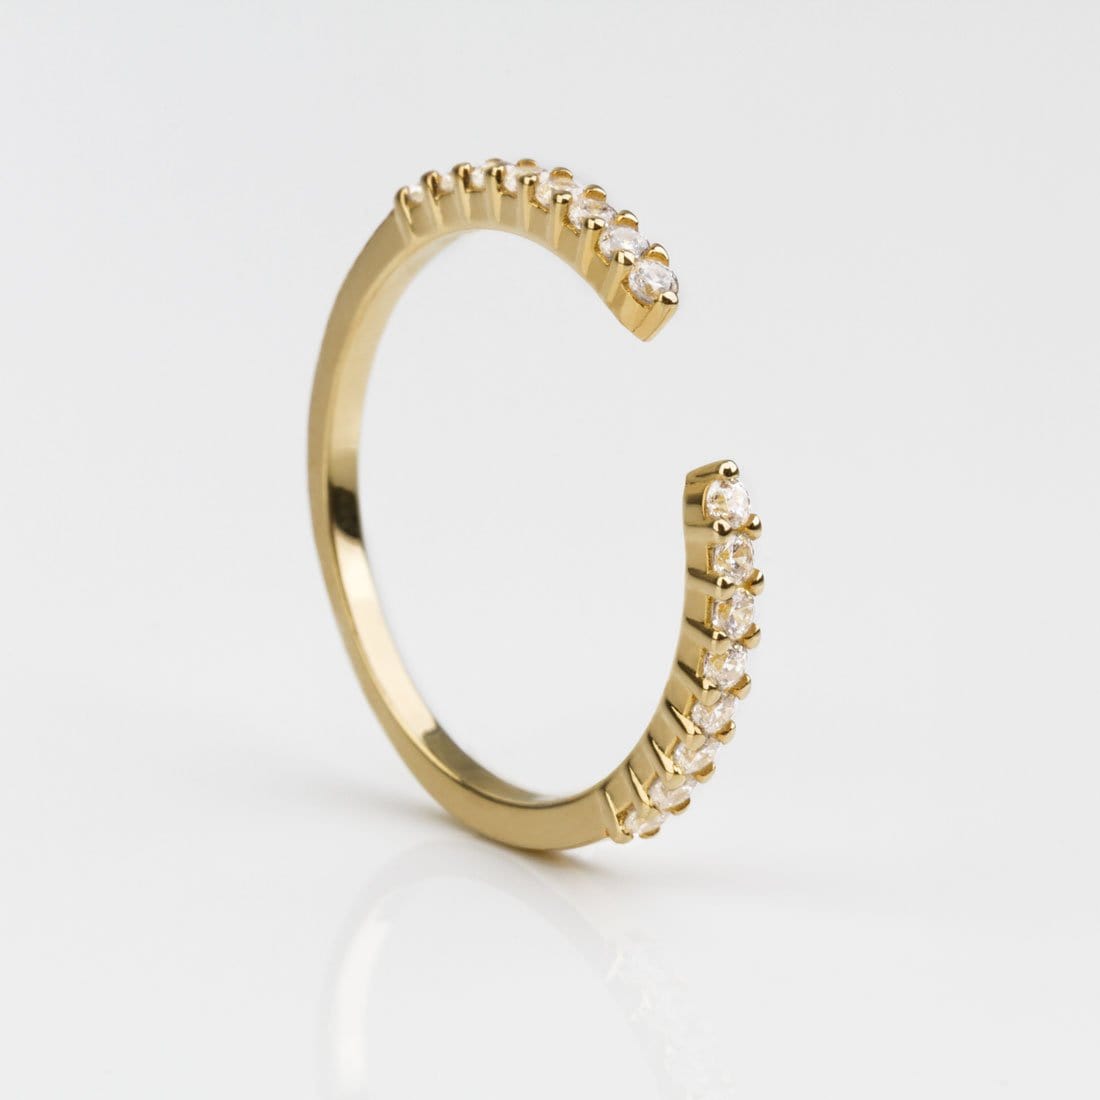 Stylish Zirconia Gold Ring